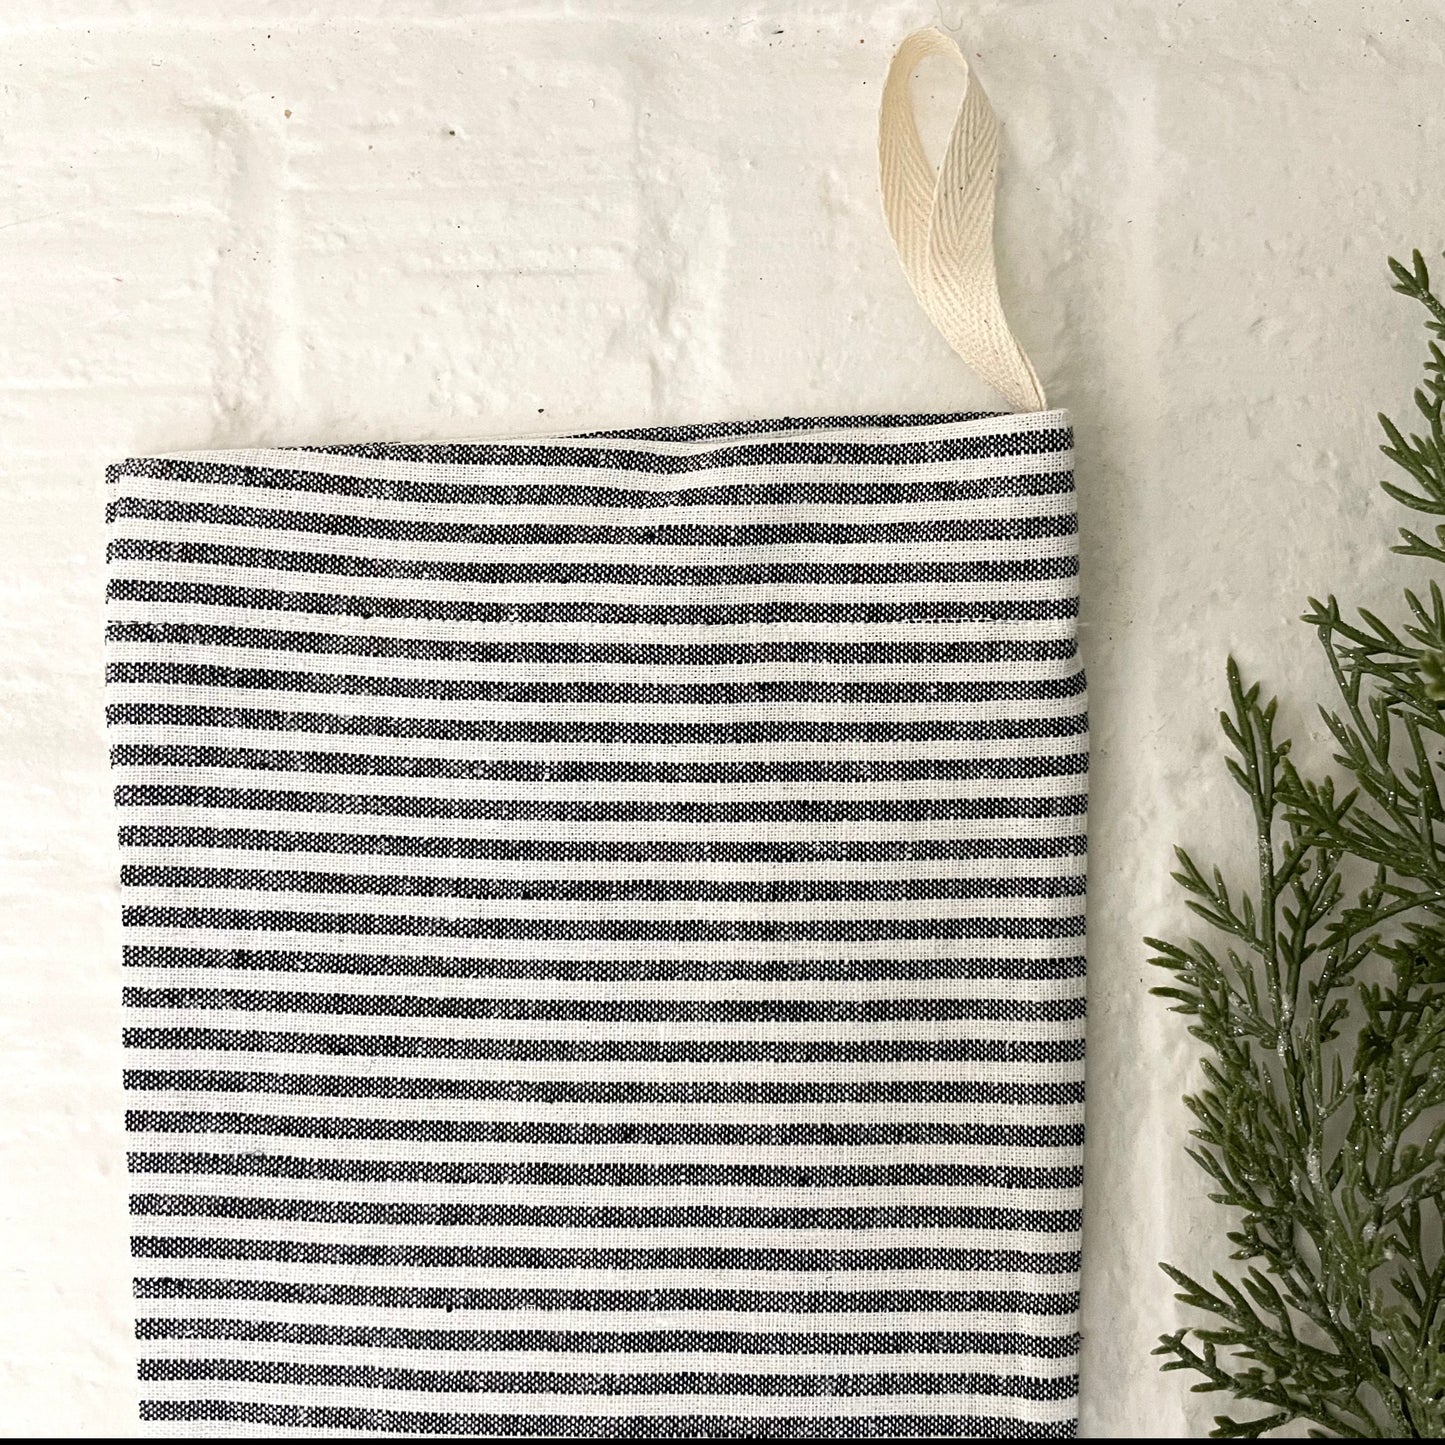 stripe handmade linen Christmas stocking